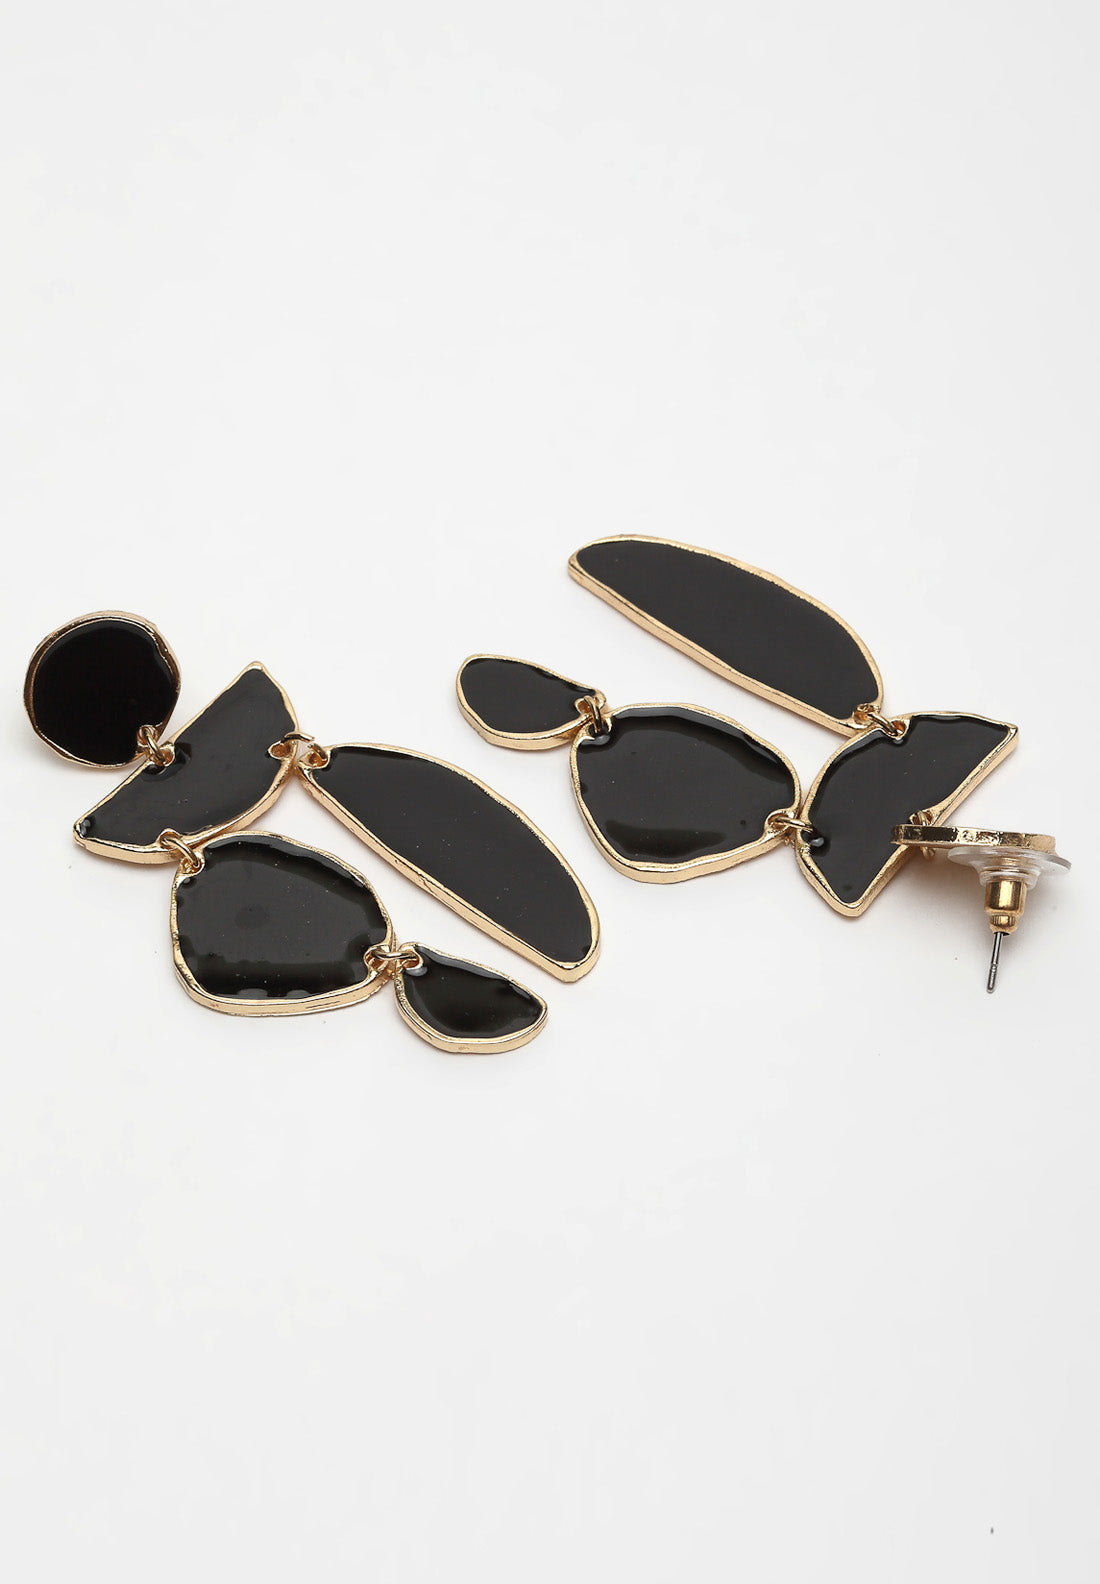 Boucles d'oreilles pendantes dorées et noires à pierres géométriques